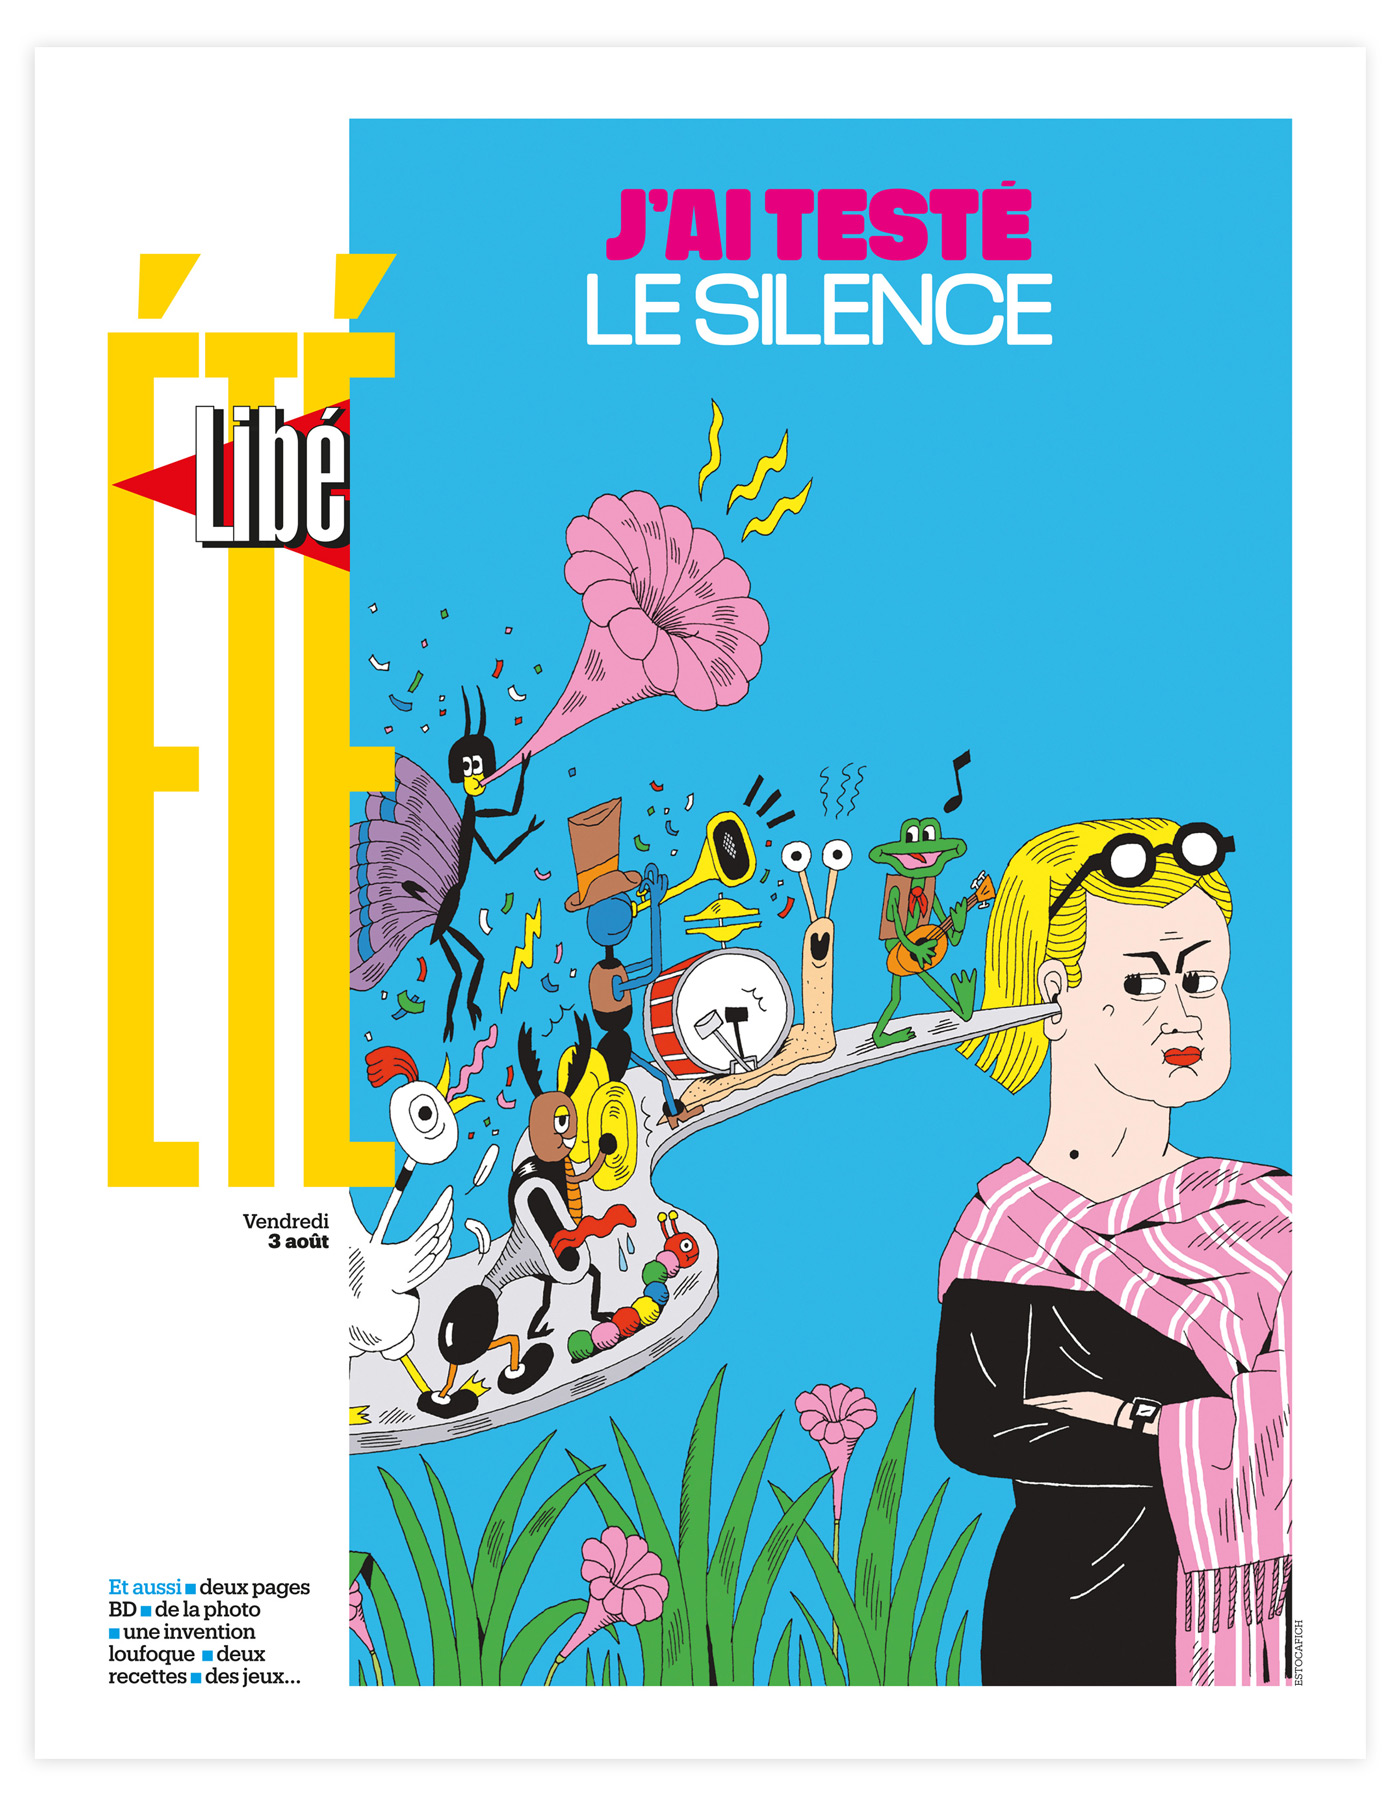 Ilustration de l'article "L'aloi du silence" paru dans le journal Libération